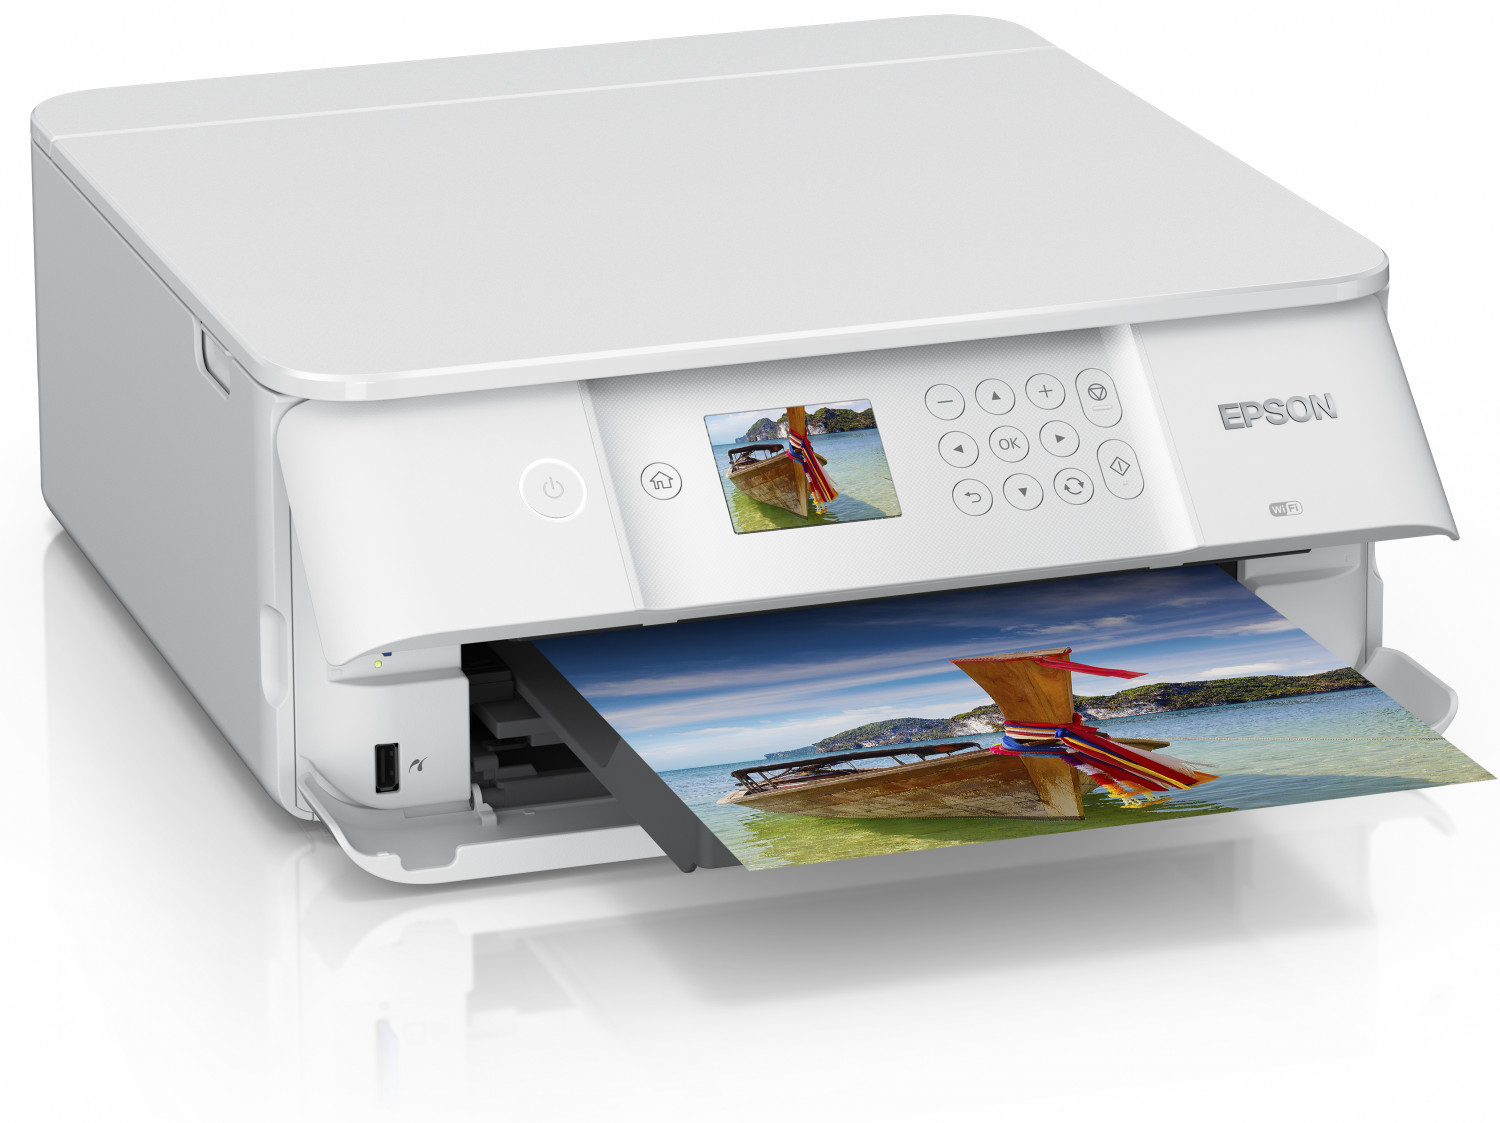 Epson Imprimante Expression Premium XP-6105, Multifonction 3-en-1 :  Imprimante recto verso / Scanner / Copieur, A4, Jet d'encre 5 couleurs,  Wifi Direct, Lecteur de carte, Ecran, Cartouches séparées : :  Informatique